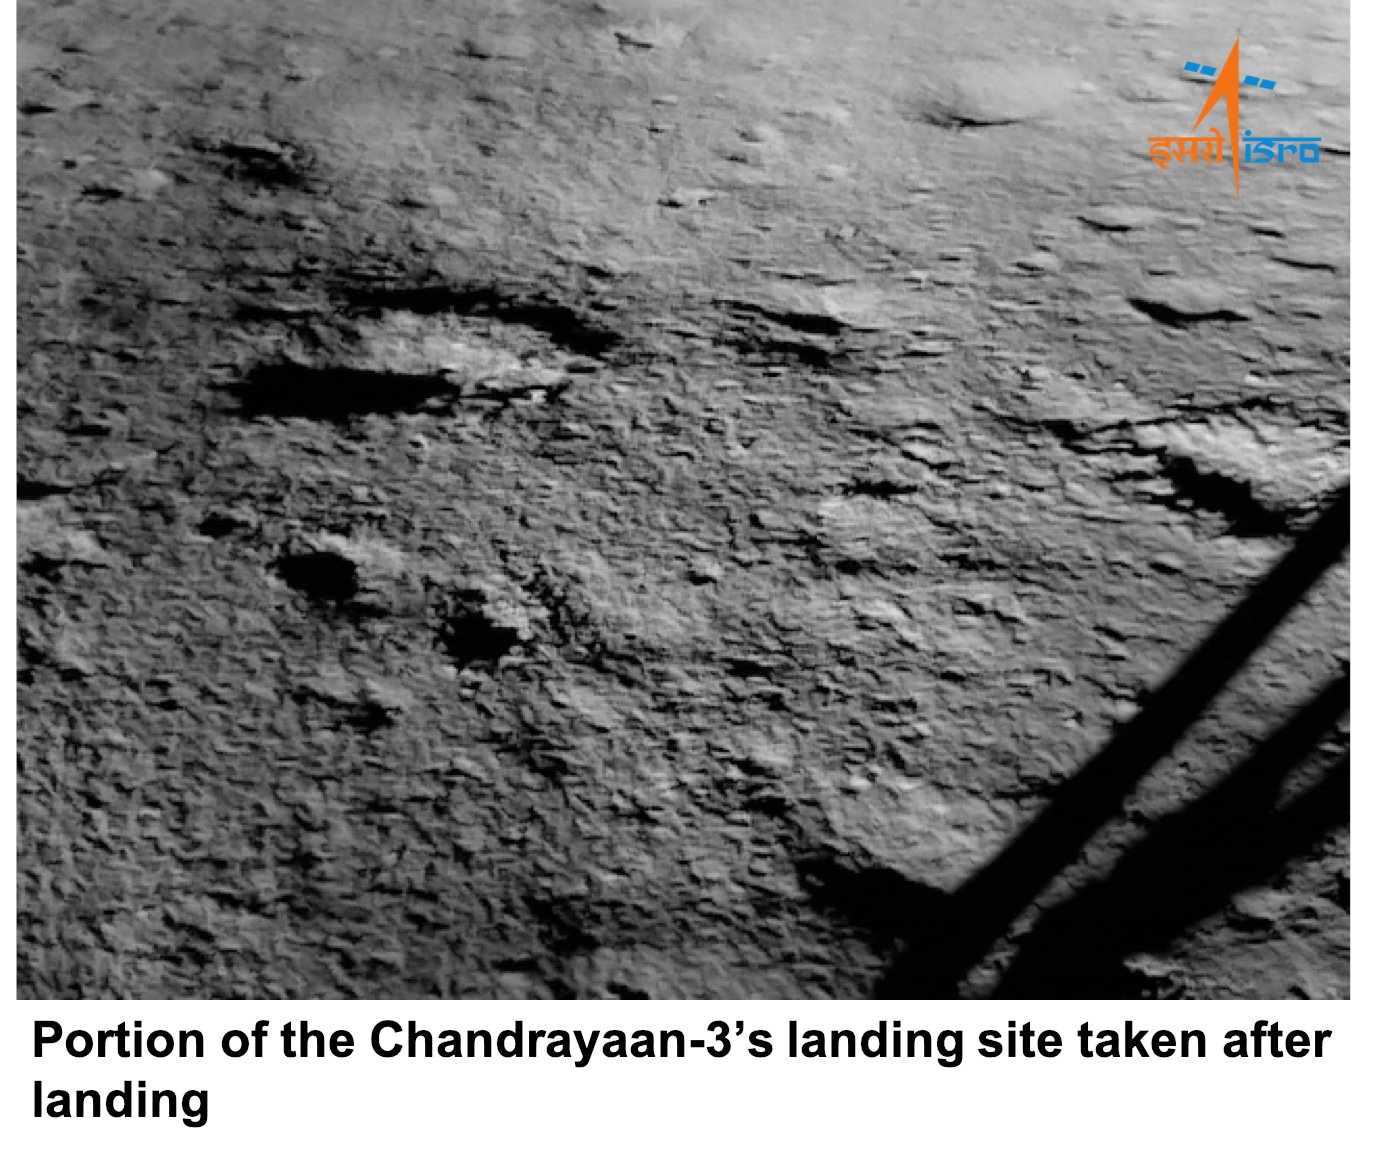 India aterriza con éxito en la Luna, es el cuarto país en lograr esta hazaña